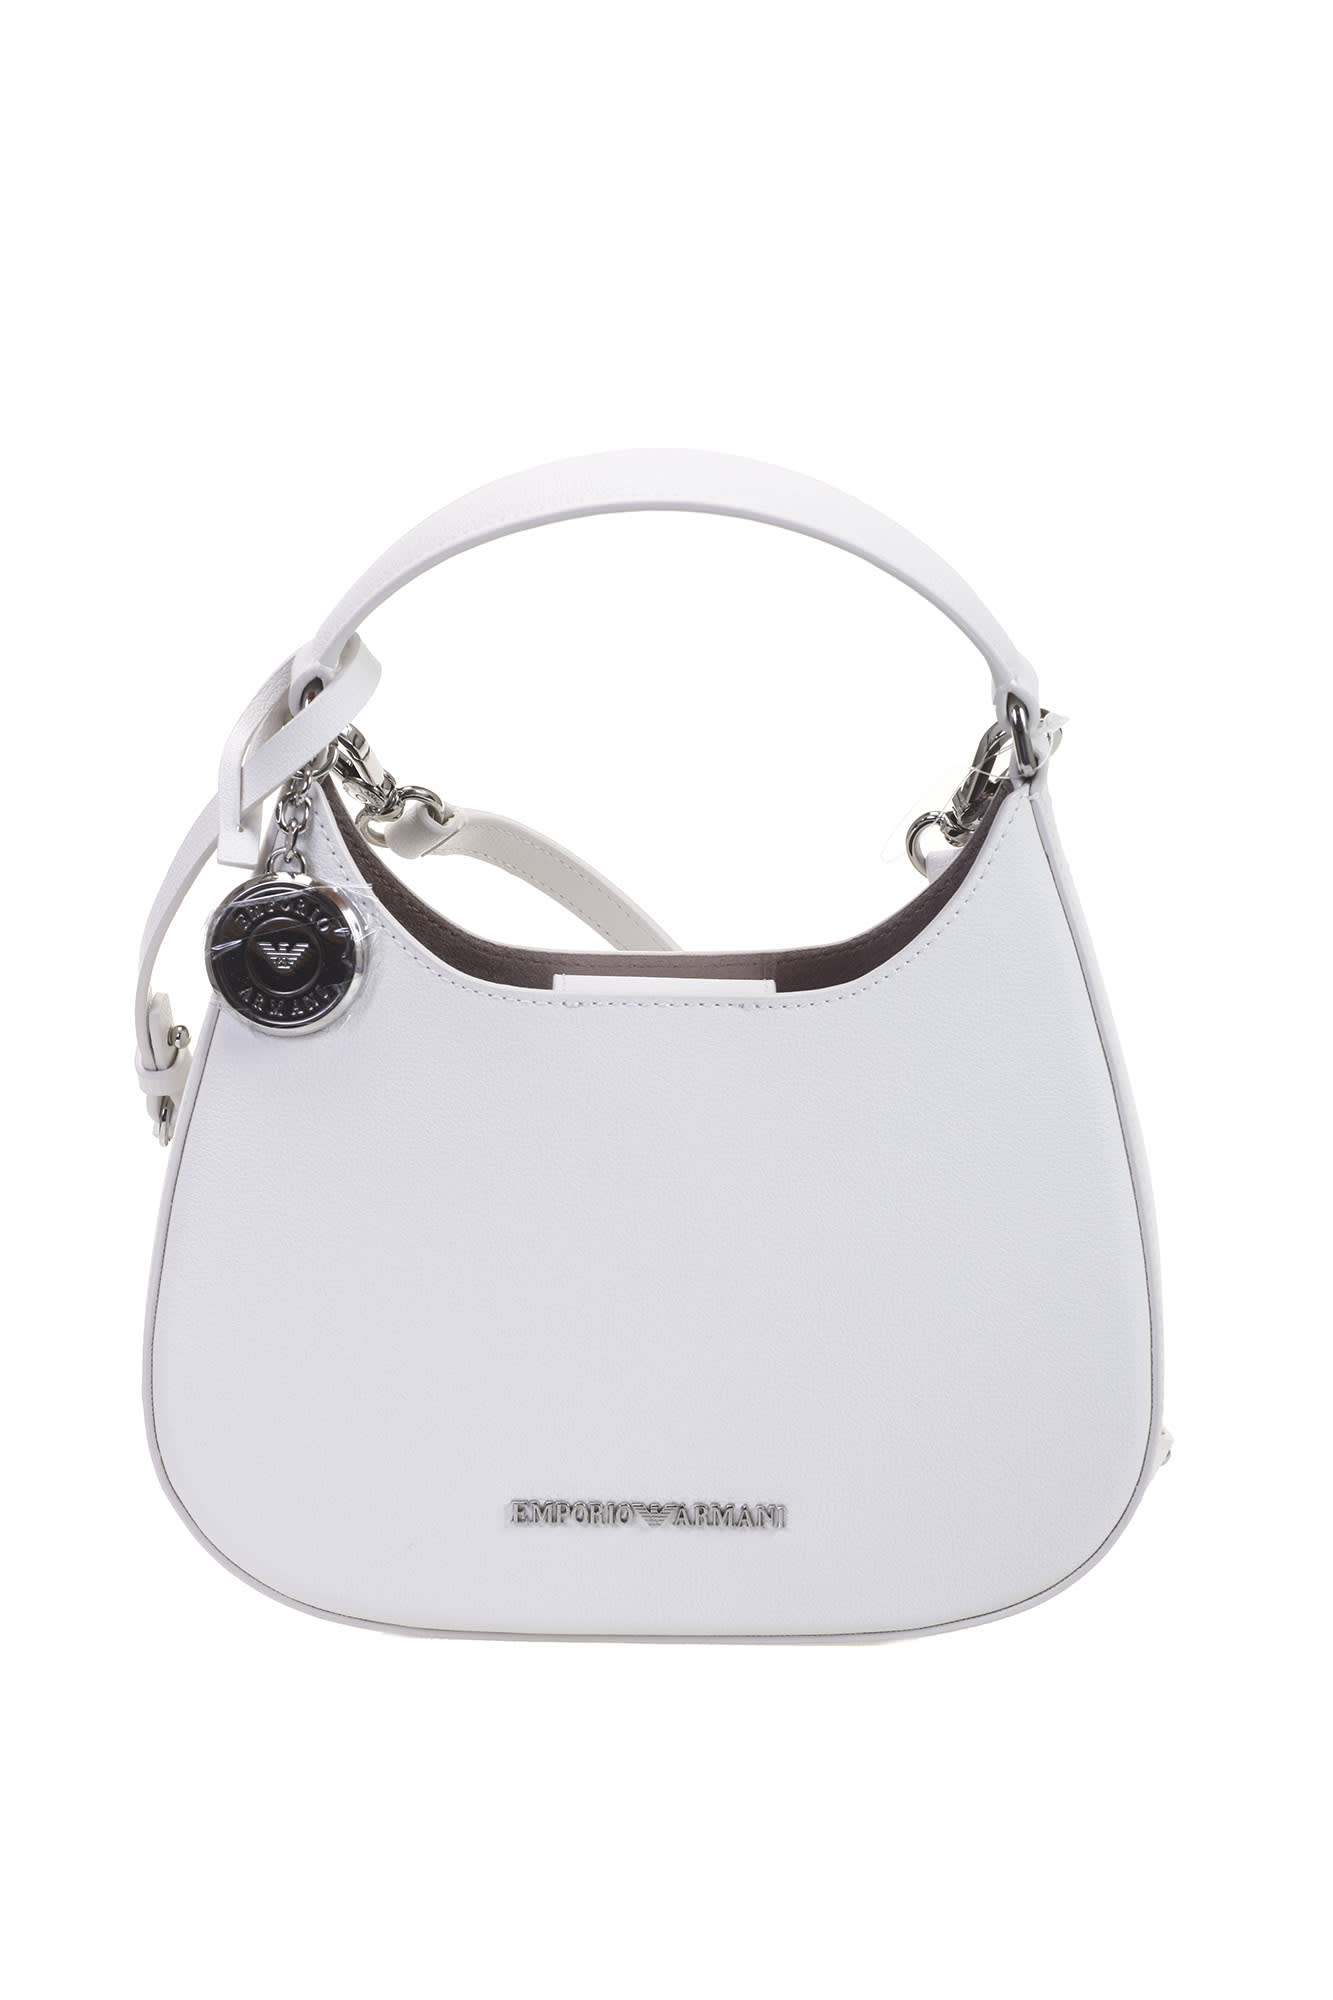 Emporio Armani Hand Hobo Bag In White